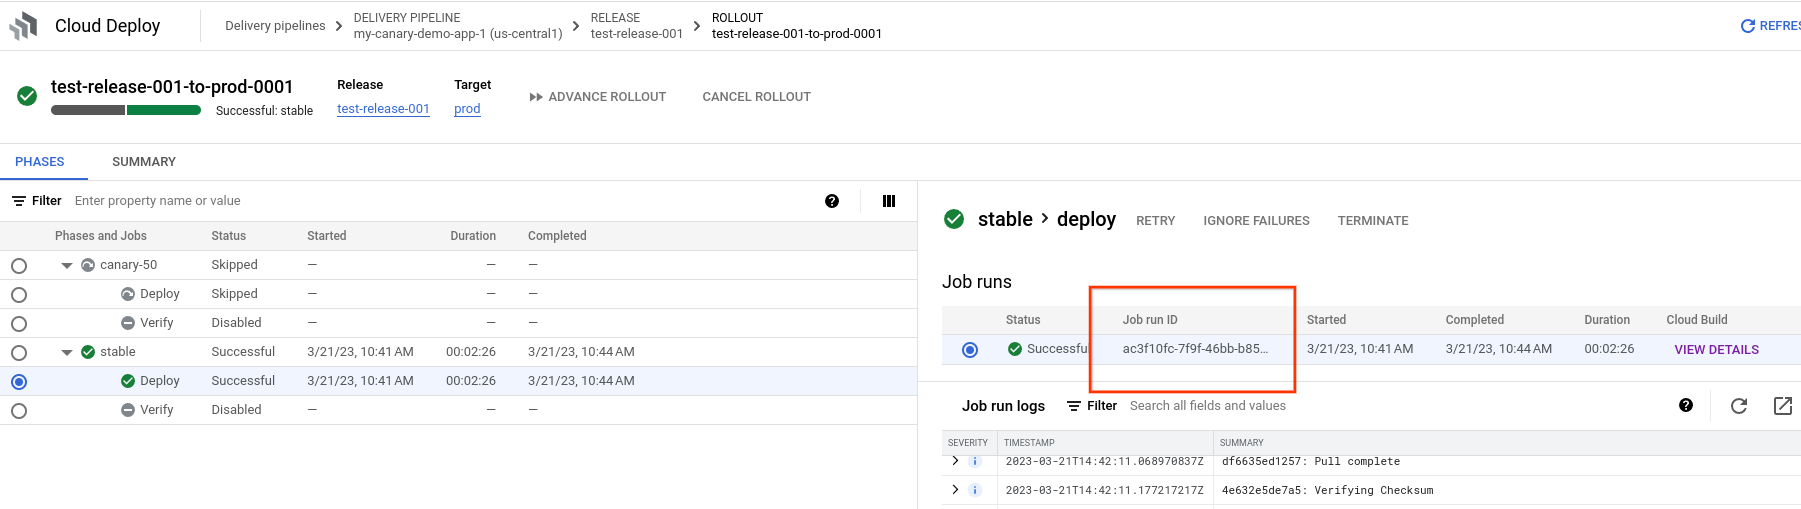 ID esecuzione job nei dettagli dell'implementazione nella console Google Cloud 